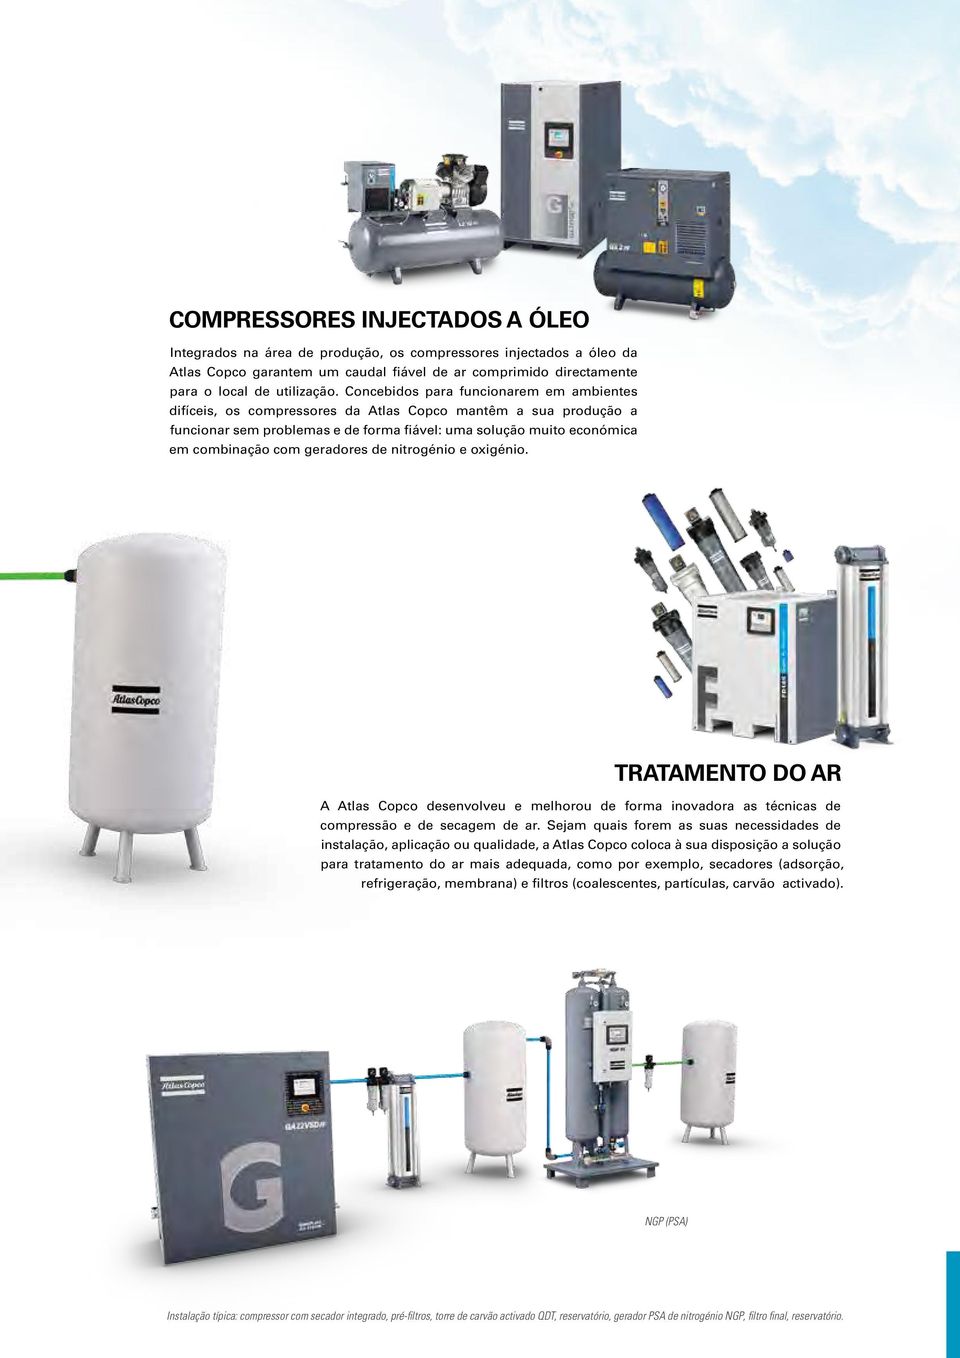 geradores de nitrogénio e oxigénio. TRATAMENTO DO AR A Atlas Copco desenvolveu e melhorou de forma inovadora as técnicas de compressão e de secagem de ar.